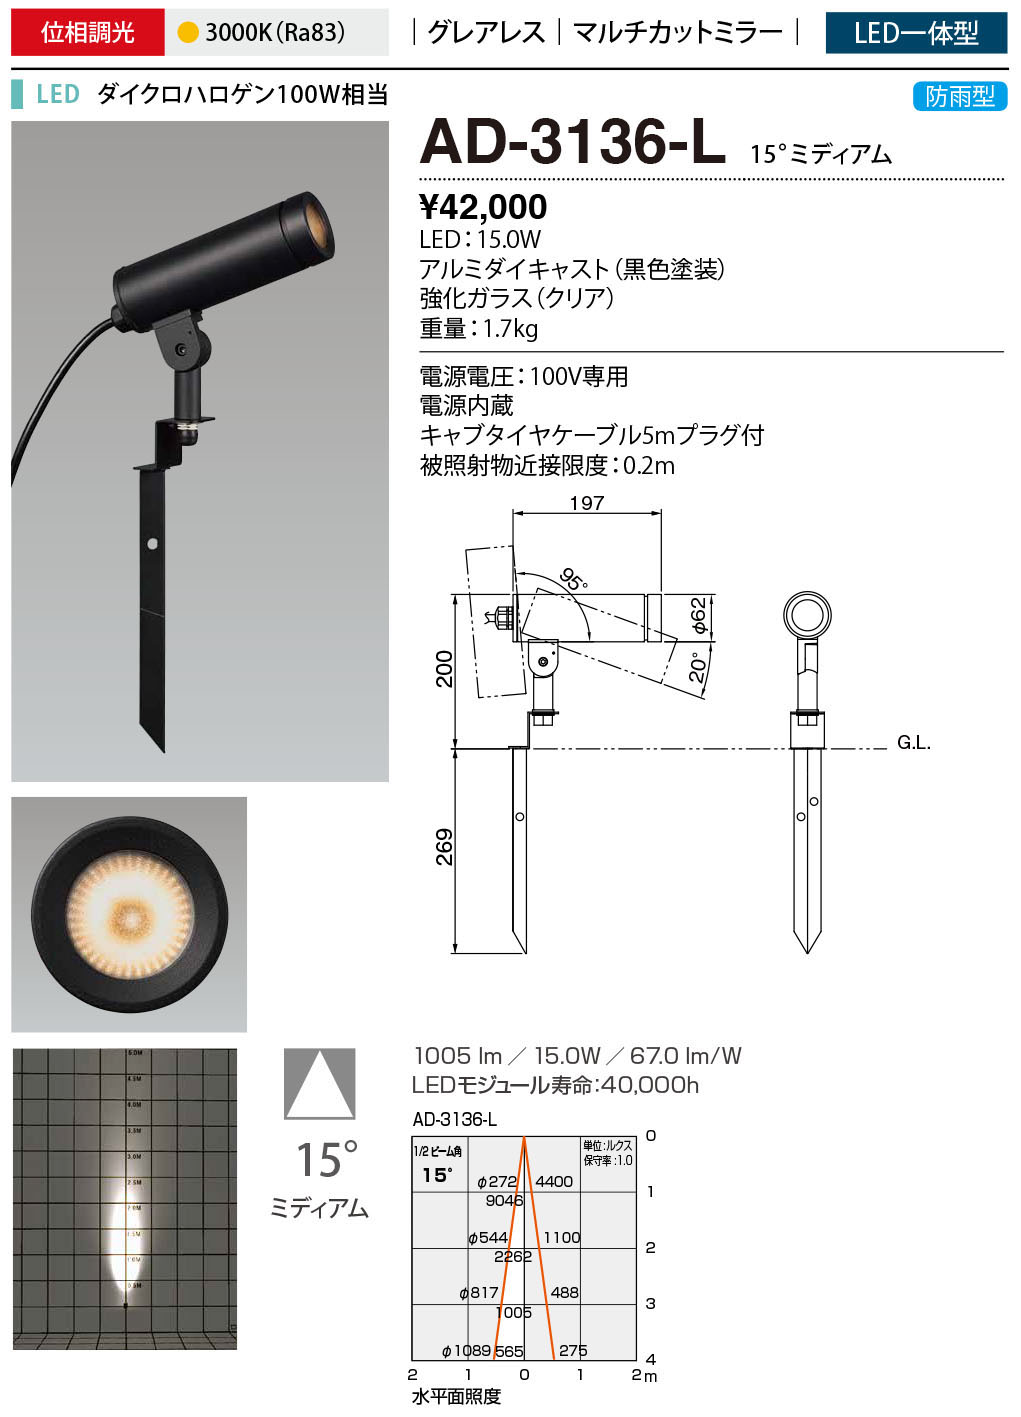 お気に入り AD-3204-L 山田照明 屋外スポットライト 黒色 LED 電球色 調光 20度